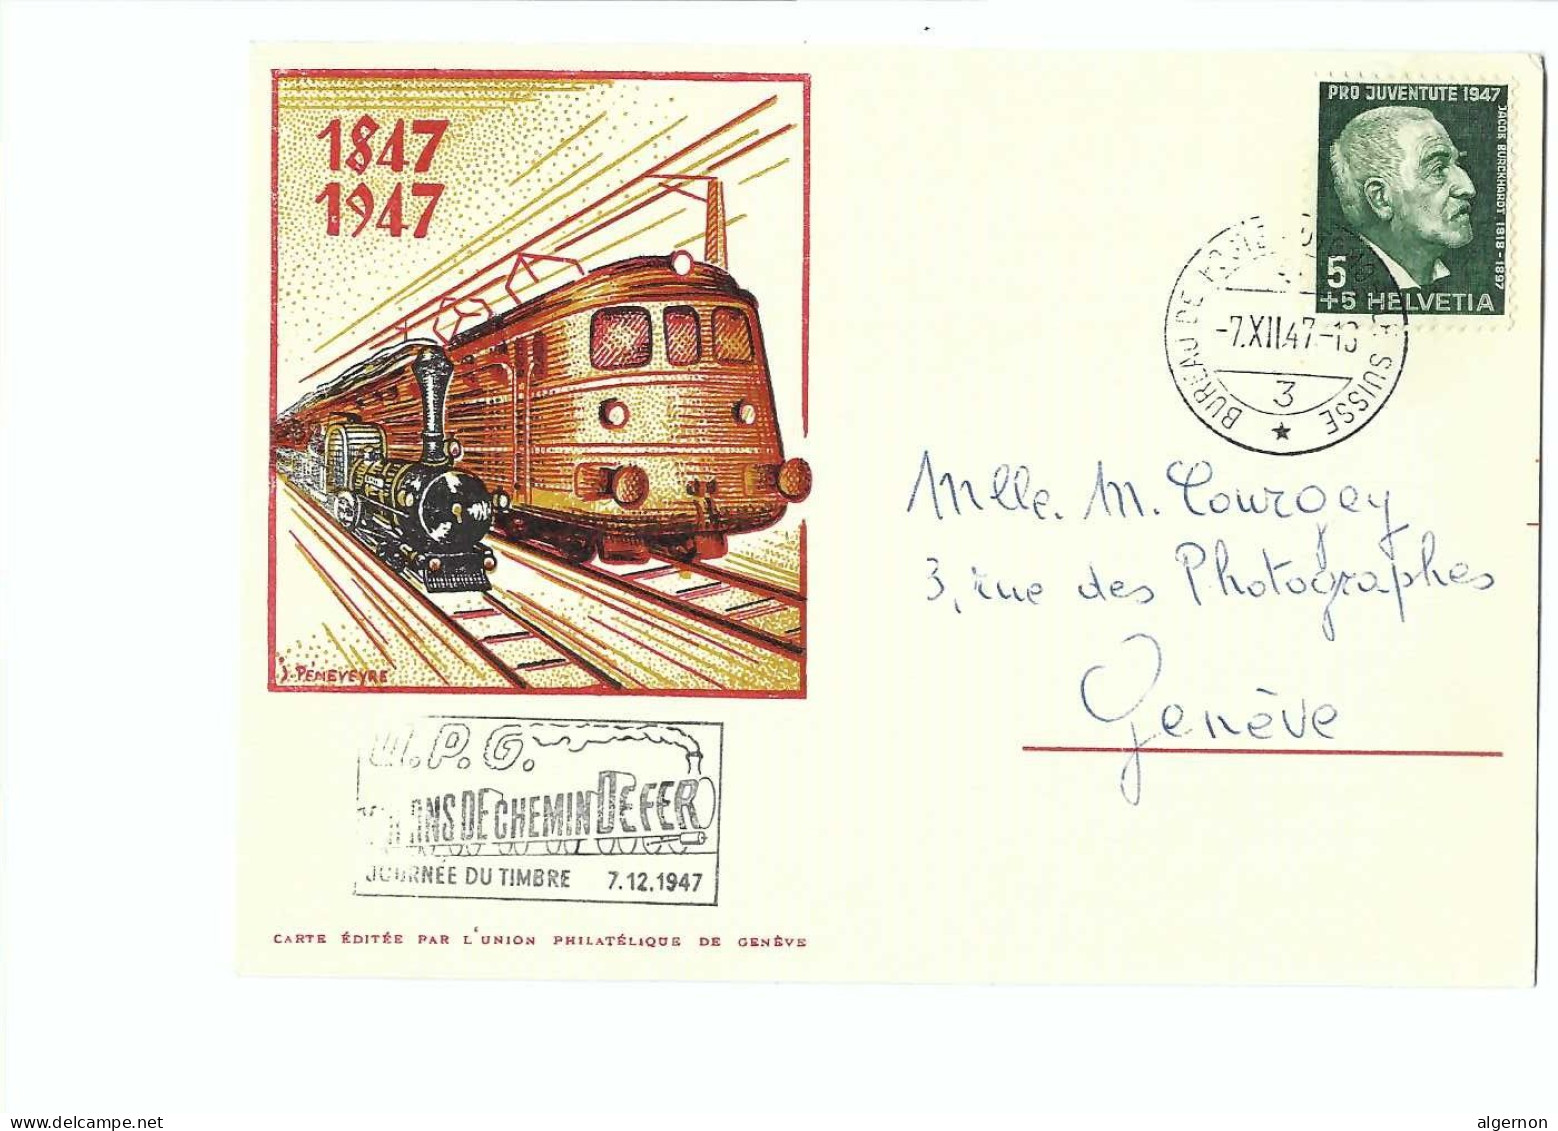 32592 -  Tag Der Briefmarke Journée Du Timbre 1947 Cent Ans De Chemin De Fer 1847-1947 Cachet Spécial UPG - Used Stamps